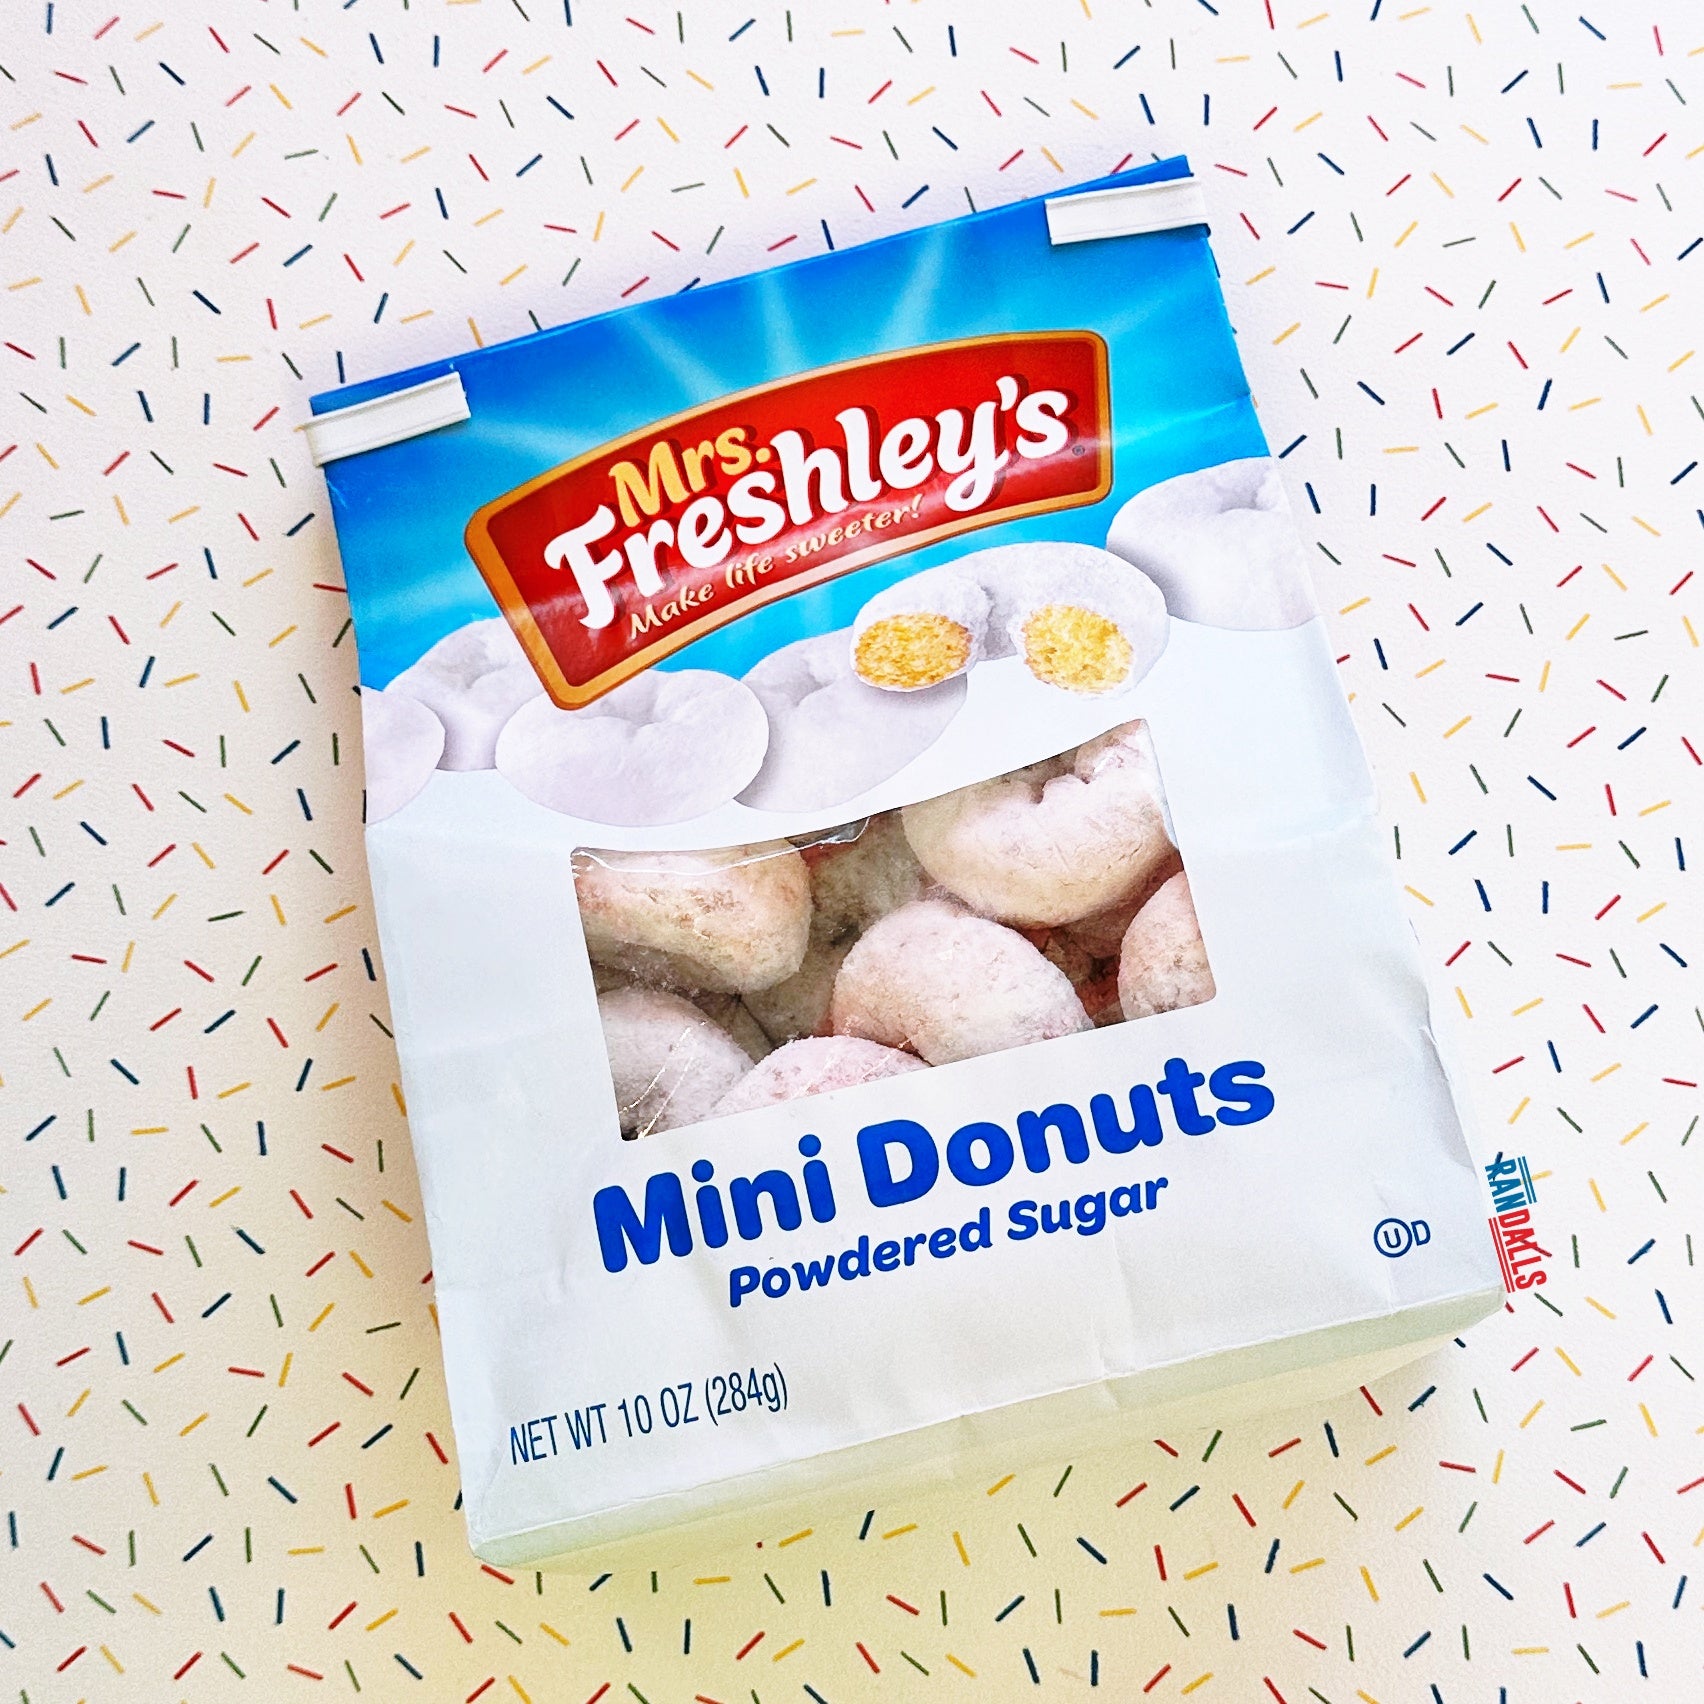 mrs freshley's, mrs freshleys, mini donuts, powdered sugar mini donuts, donut, donuts, randalls, randallsuk, usa, america